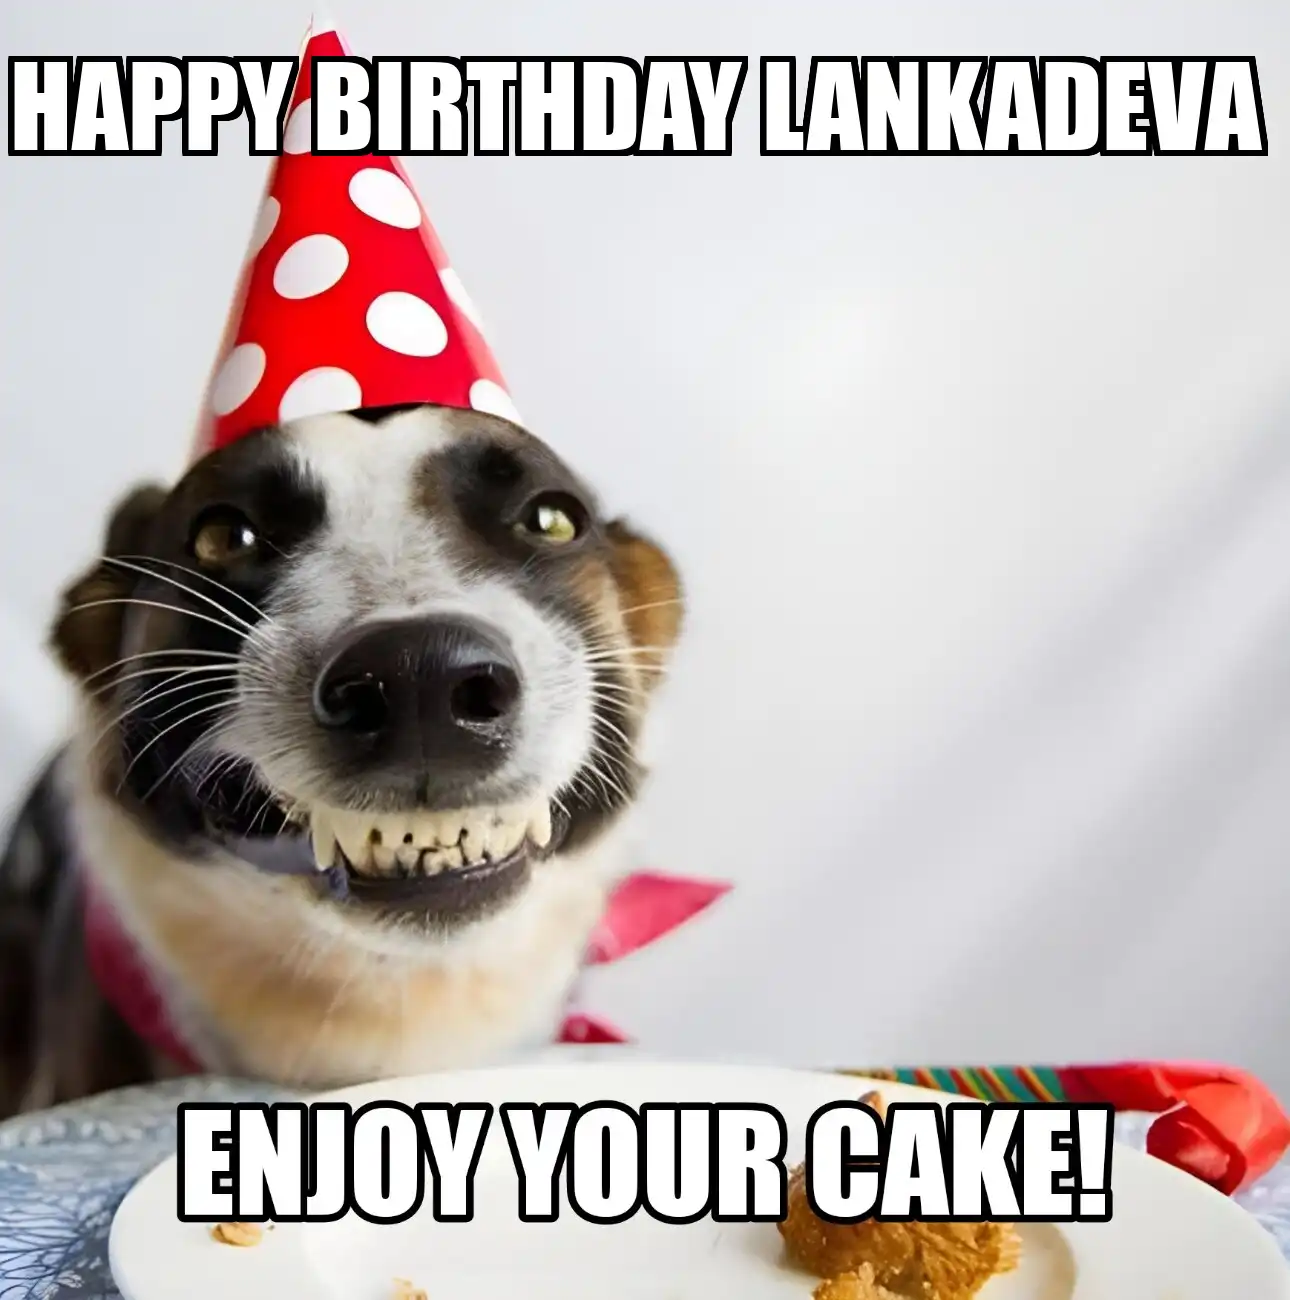 Happy Birthday Lankadeva Enjoy Your Cake Dog Meme